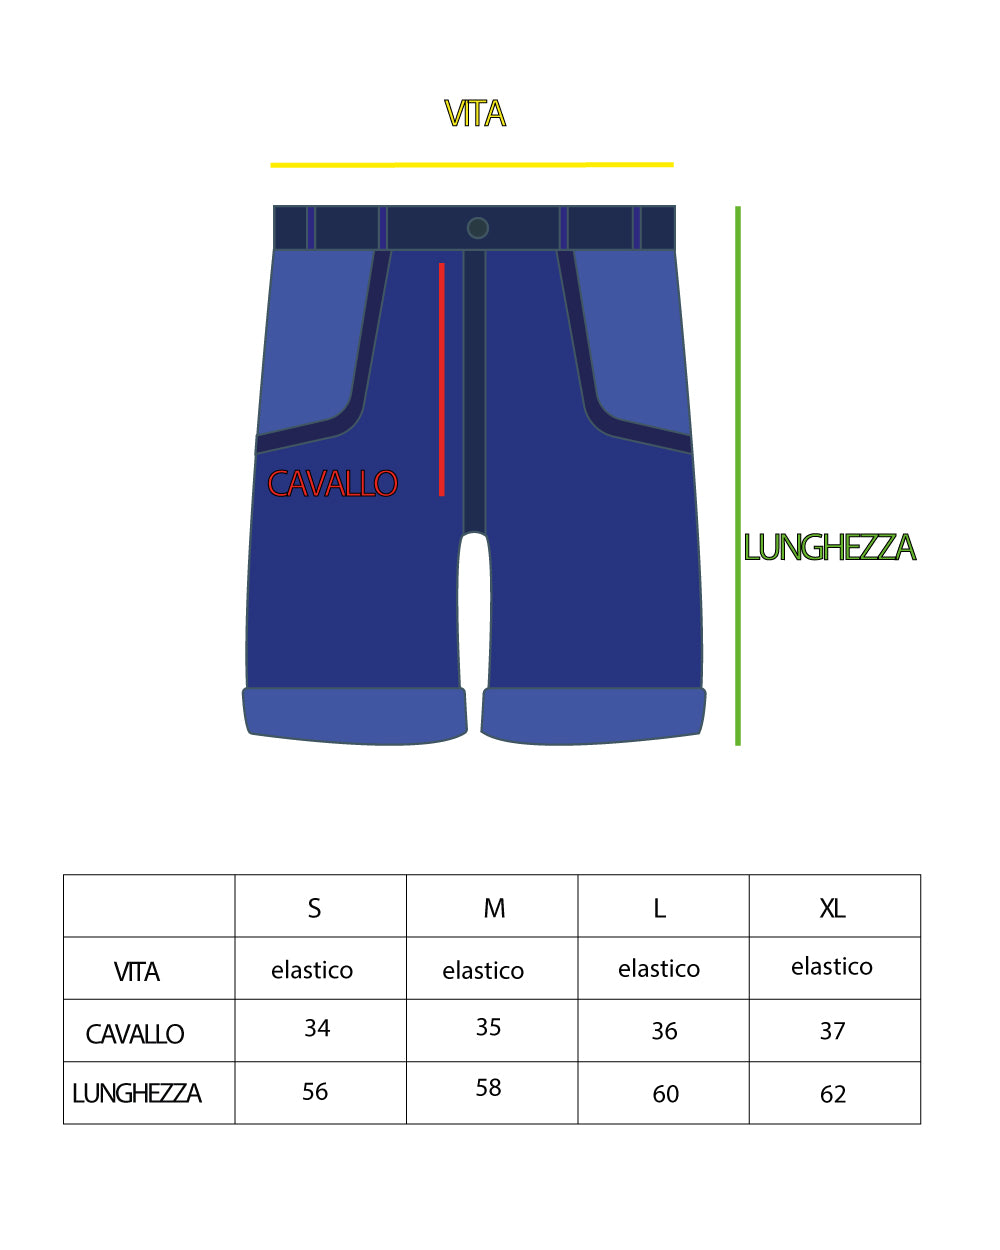 Bermuda Pantaloncino Uomo Corto Tie Dye Colorato GIOSAL-PC1688A